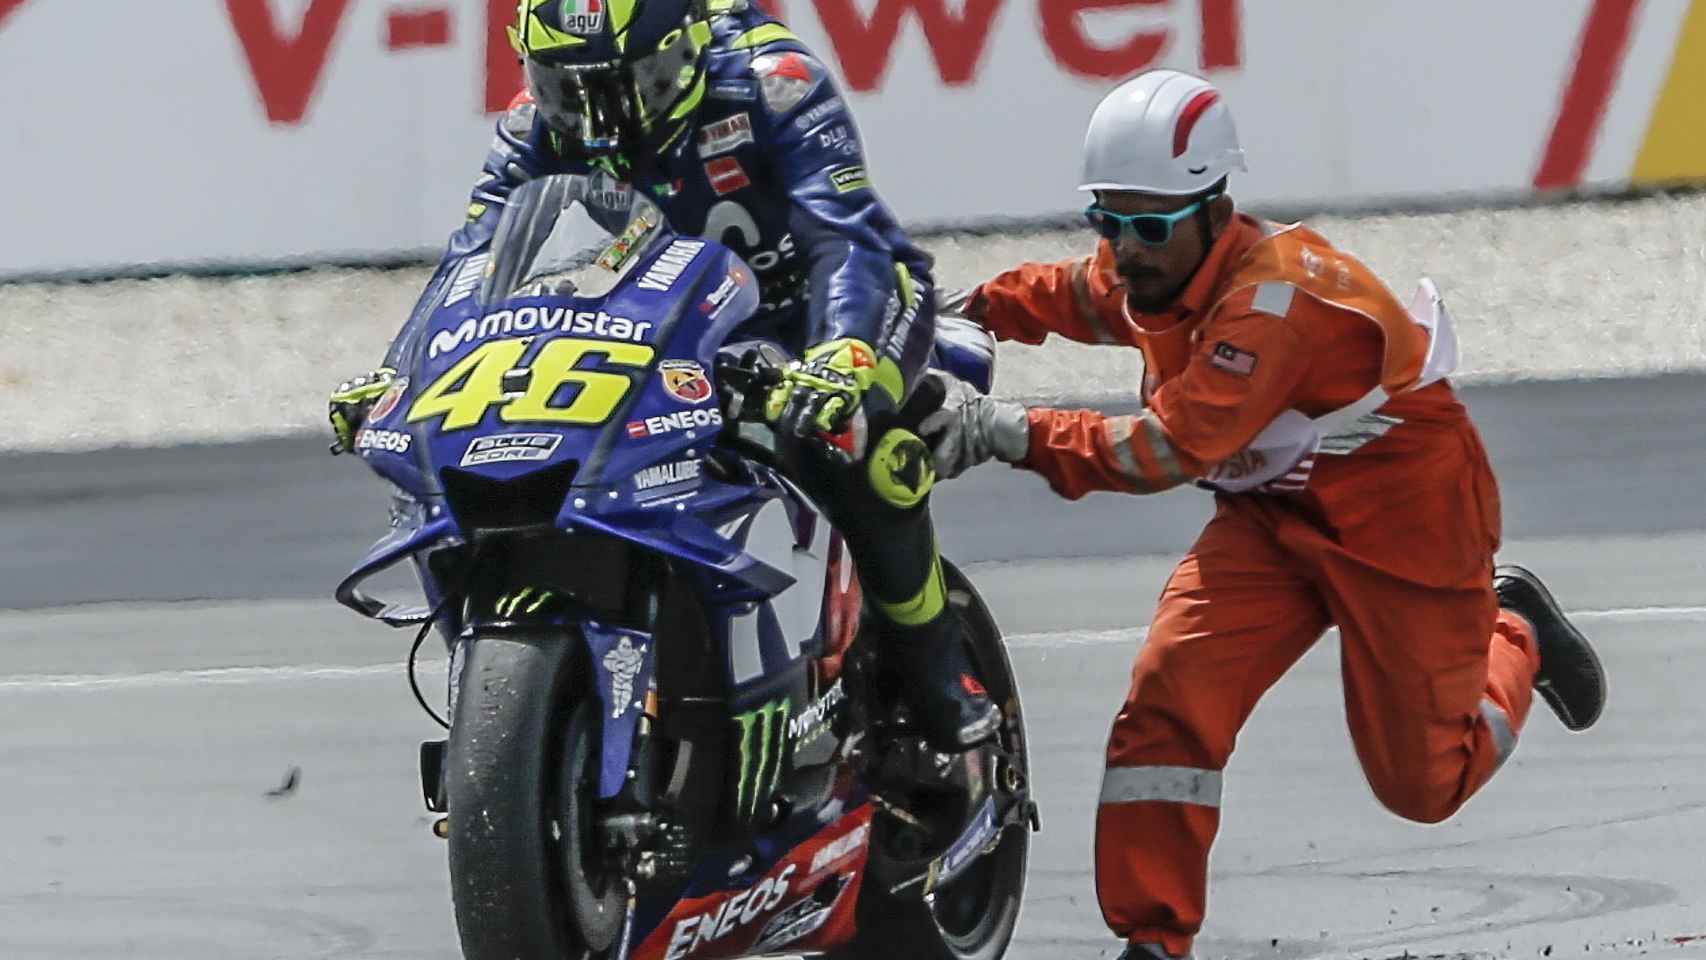 Un comisario de pista ayuda a Rossi a volver a la carrera, tras la caída en la curva 1 de Sepang.